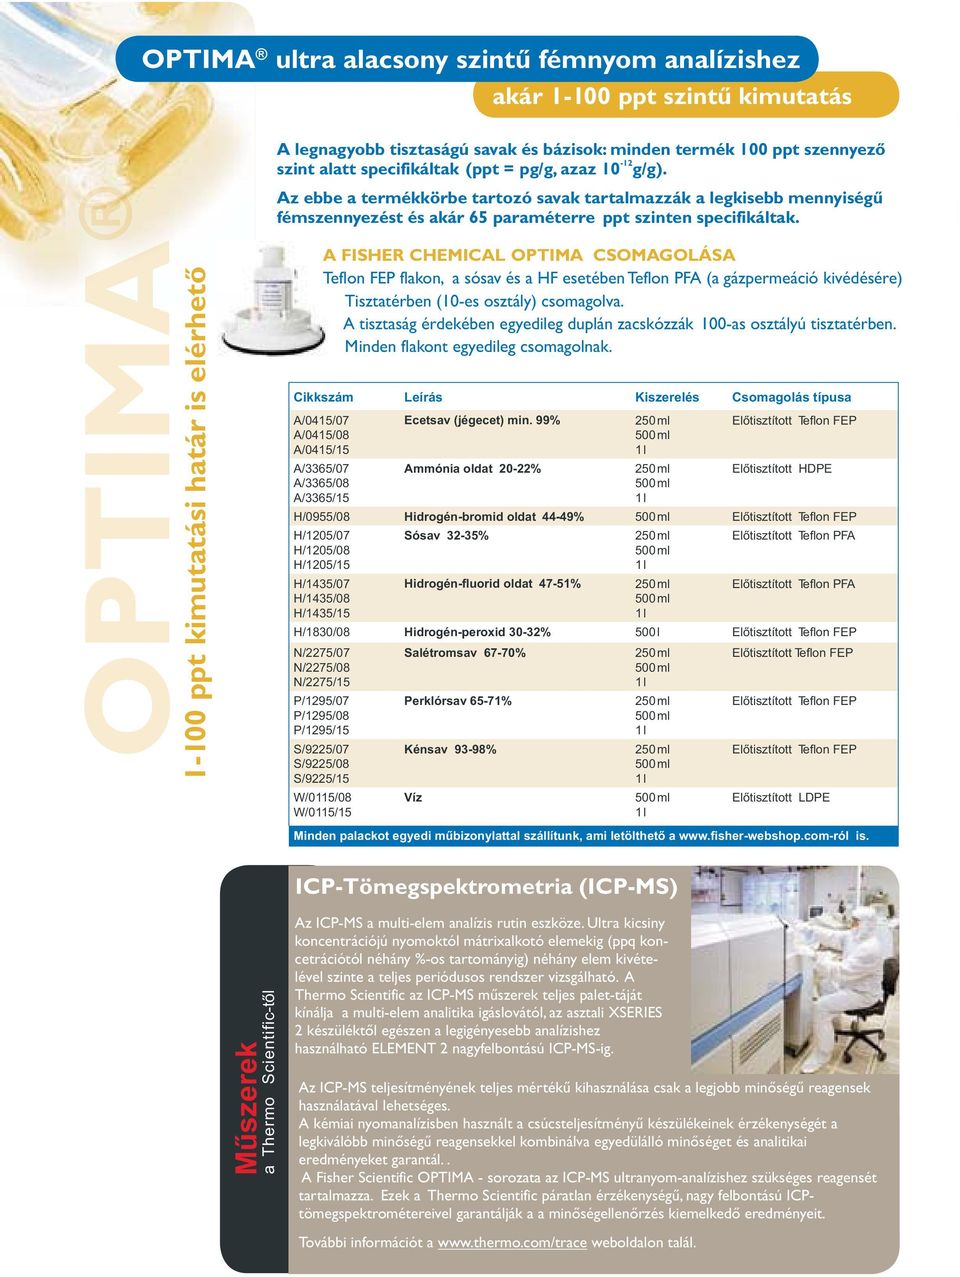 1-100 ppt kimutatási határ is elérhető A FISHER CHEMICAL OPTIMA CSOMAGOLÁSA Teflon FEP flakon, a sósav és a HF esetében Teflon PFA (a gázpermeáció kivédésére) Tisztatérben (10-es osztály) csomagolva.